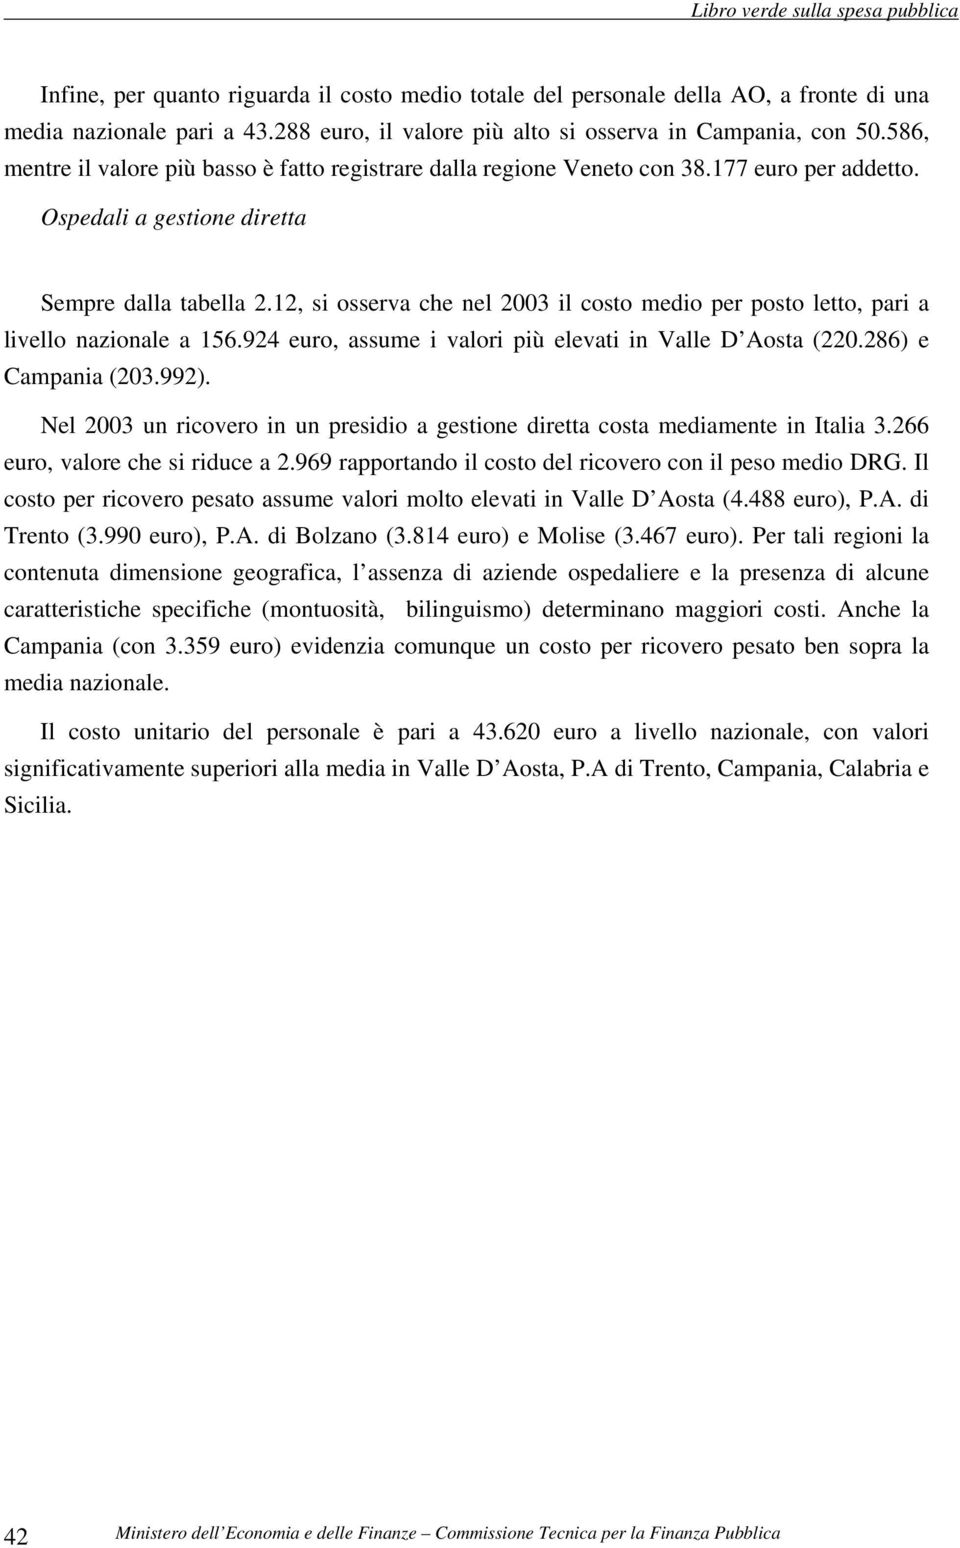 12, si osserva che nel 2003 il costo medio per posto letto, pari a livello nazionale a 156.924 euro, assume i valori più elevati in Valle D Aosta (220.286) e Campania (203.992).